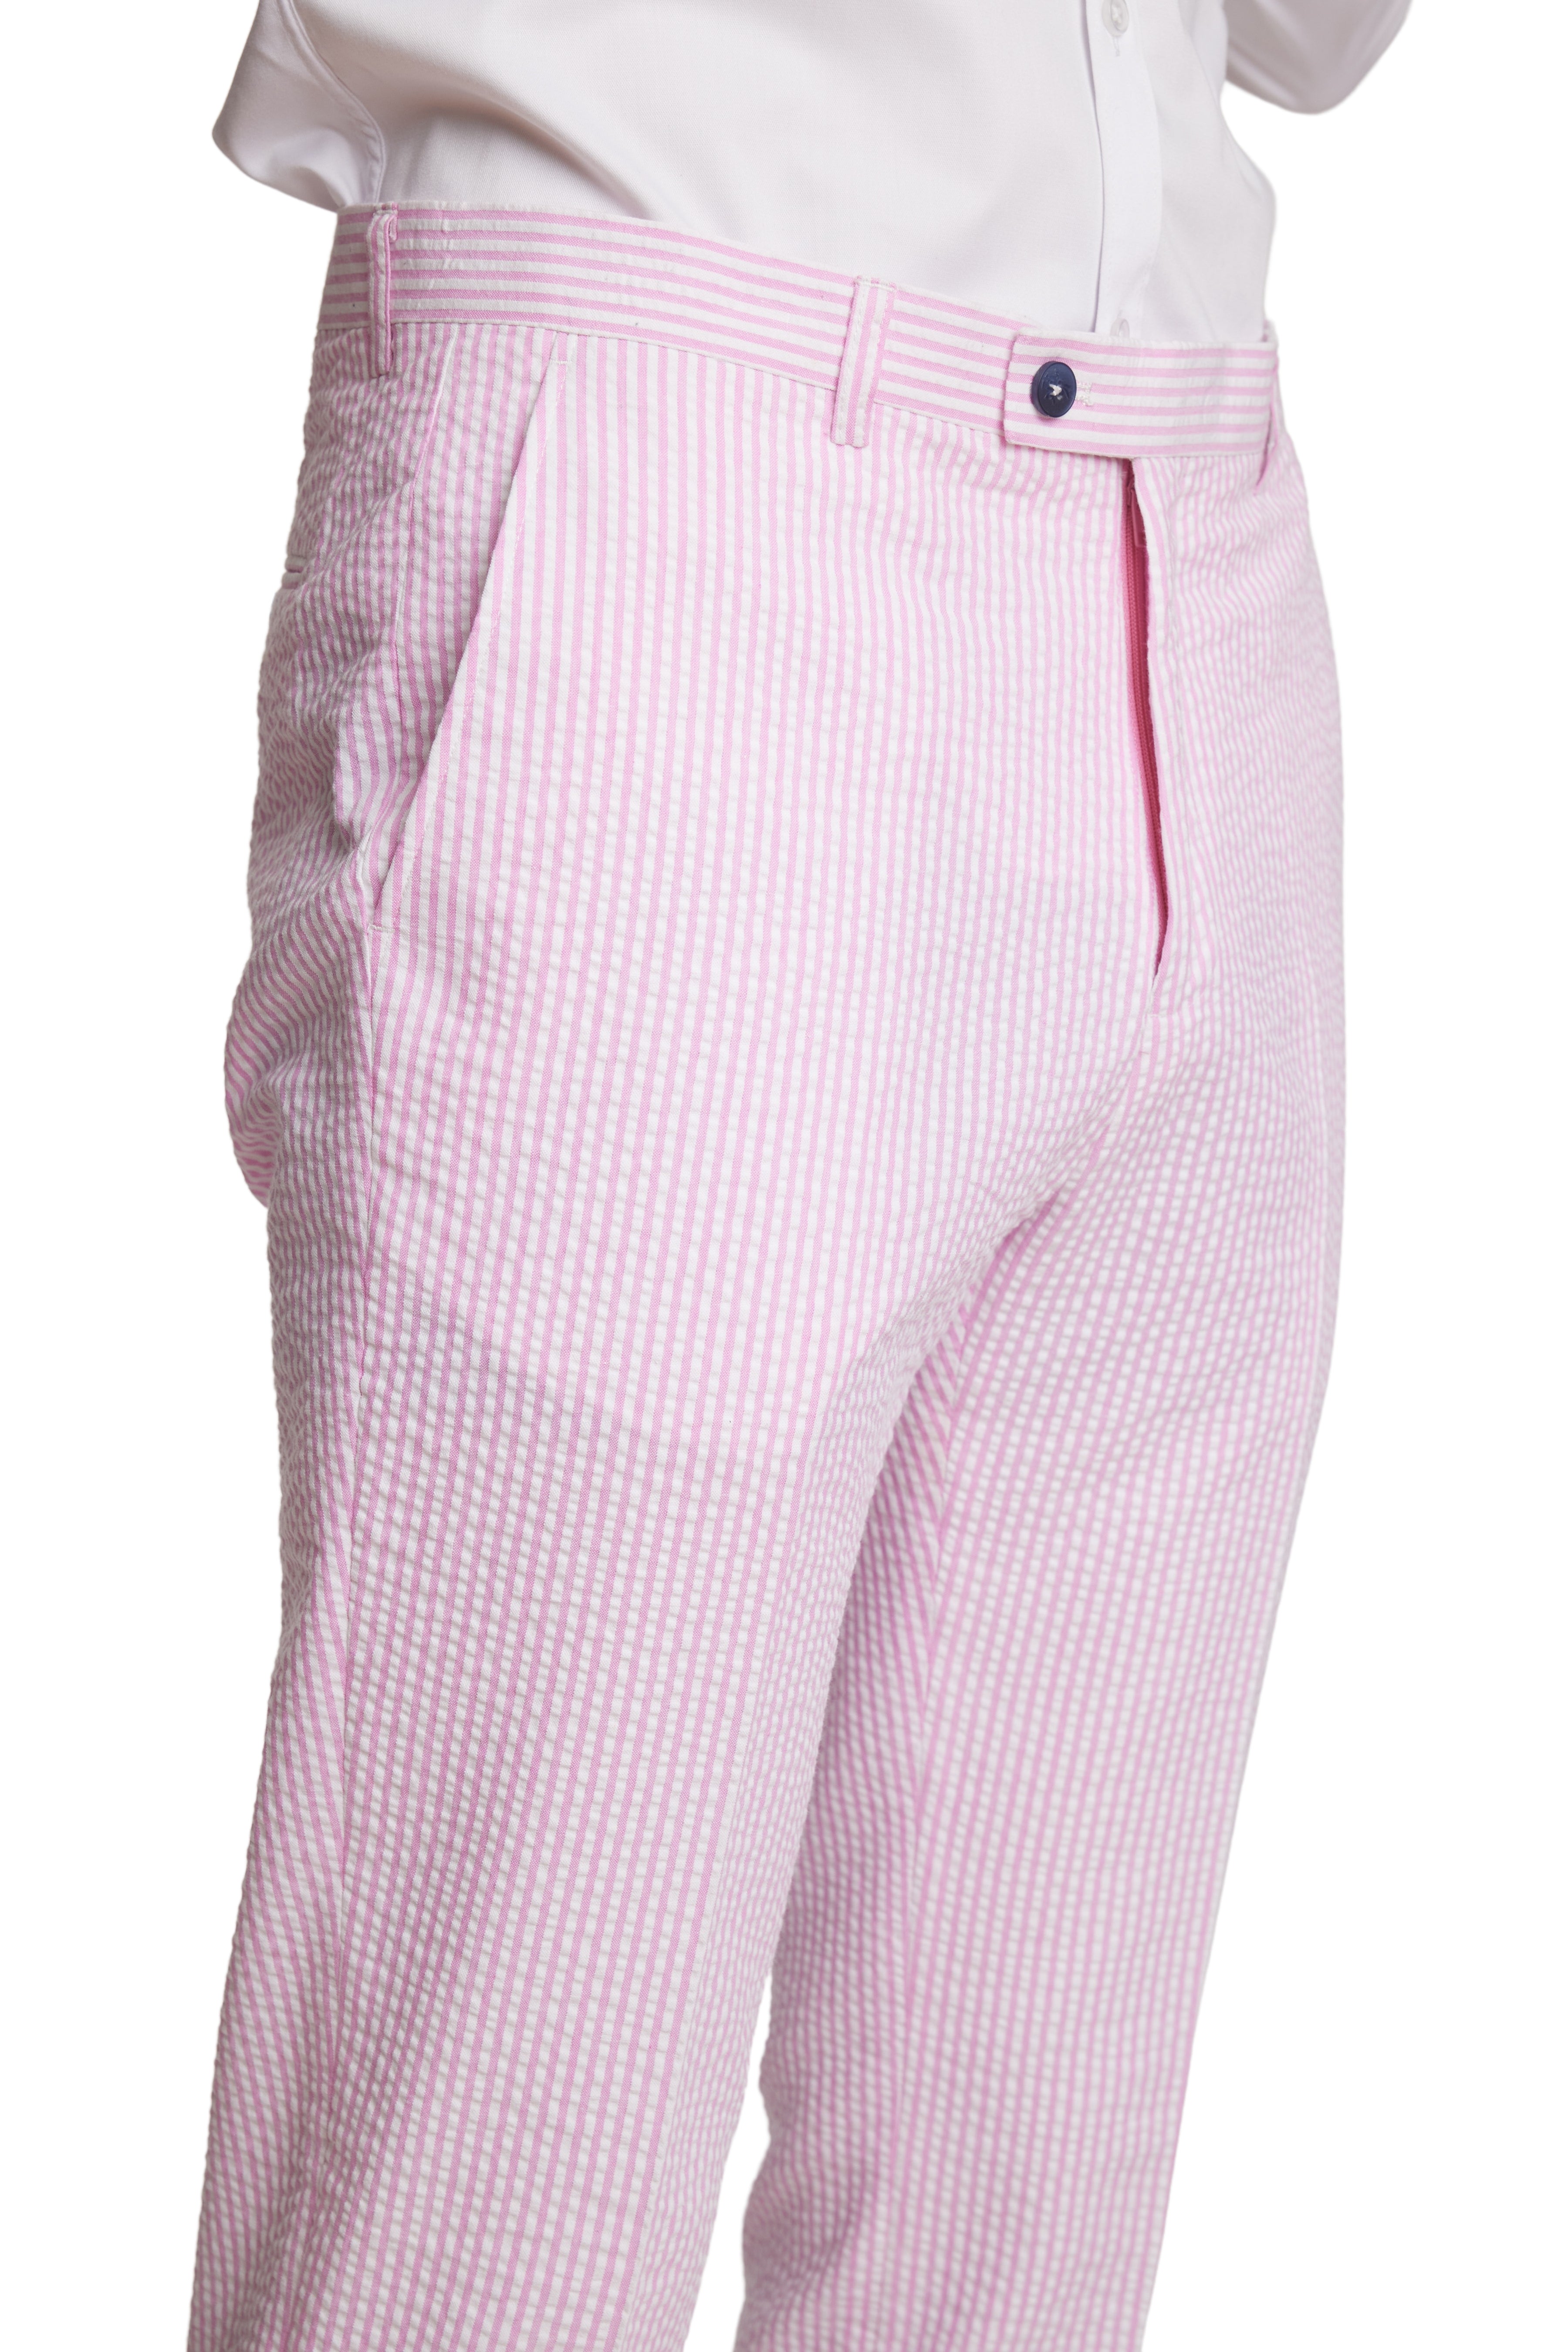 Downing Pants - slim - Pink Wht Seersucker Stripes